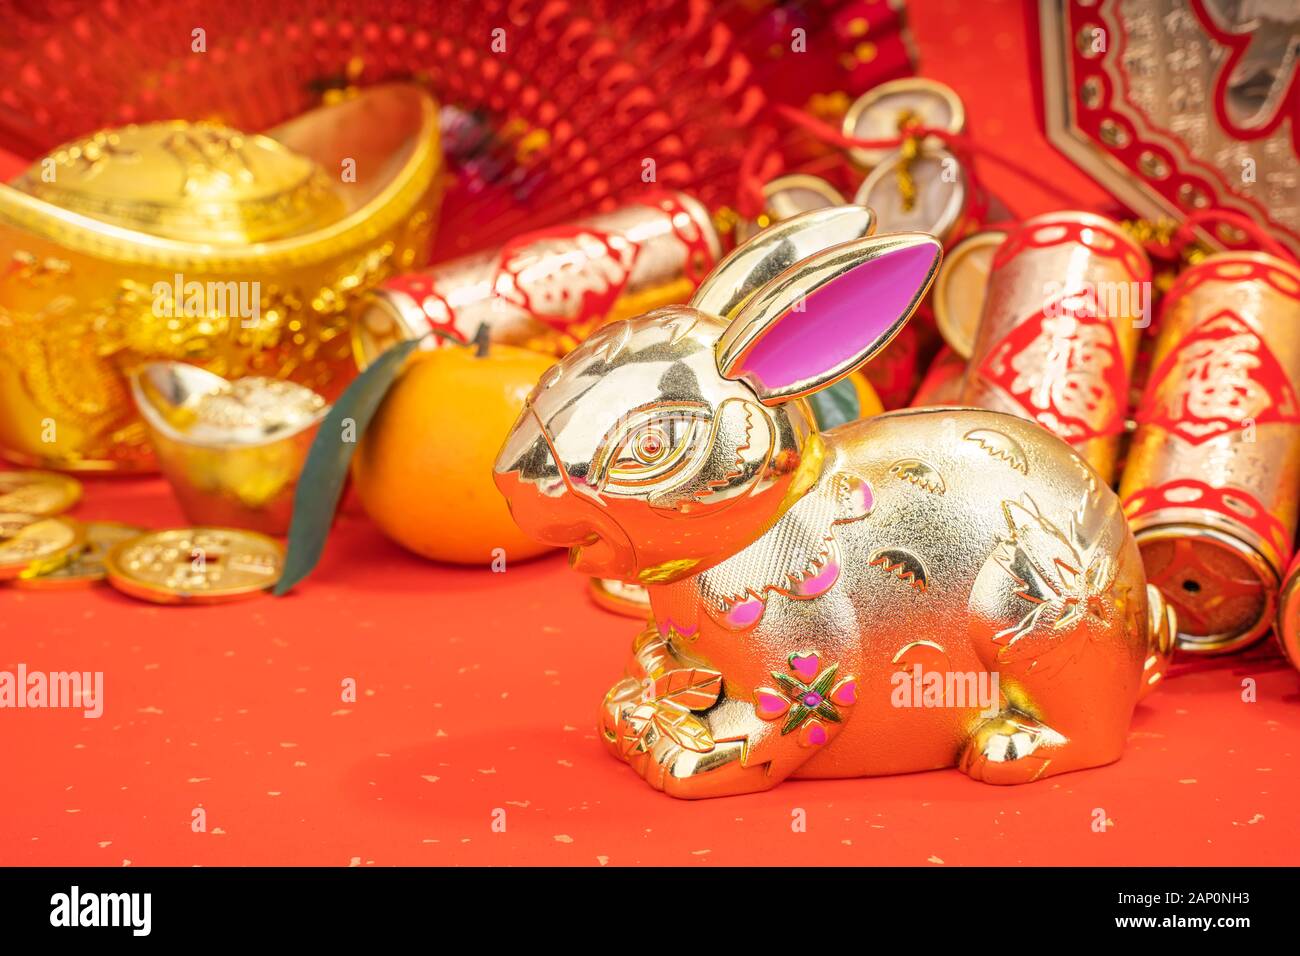 Salutations pour le Nouvel An chinois Le lapin,traduction calligraphie chinoise:bon bénir pour le nouvel an Banque D'Images